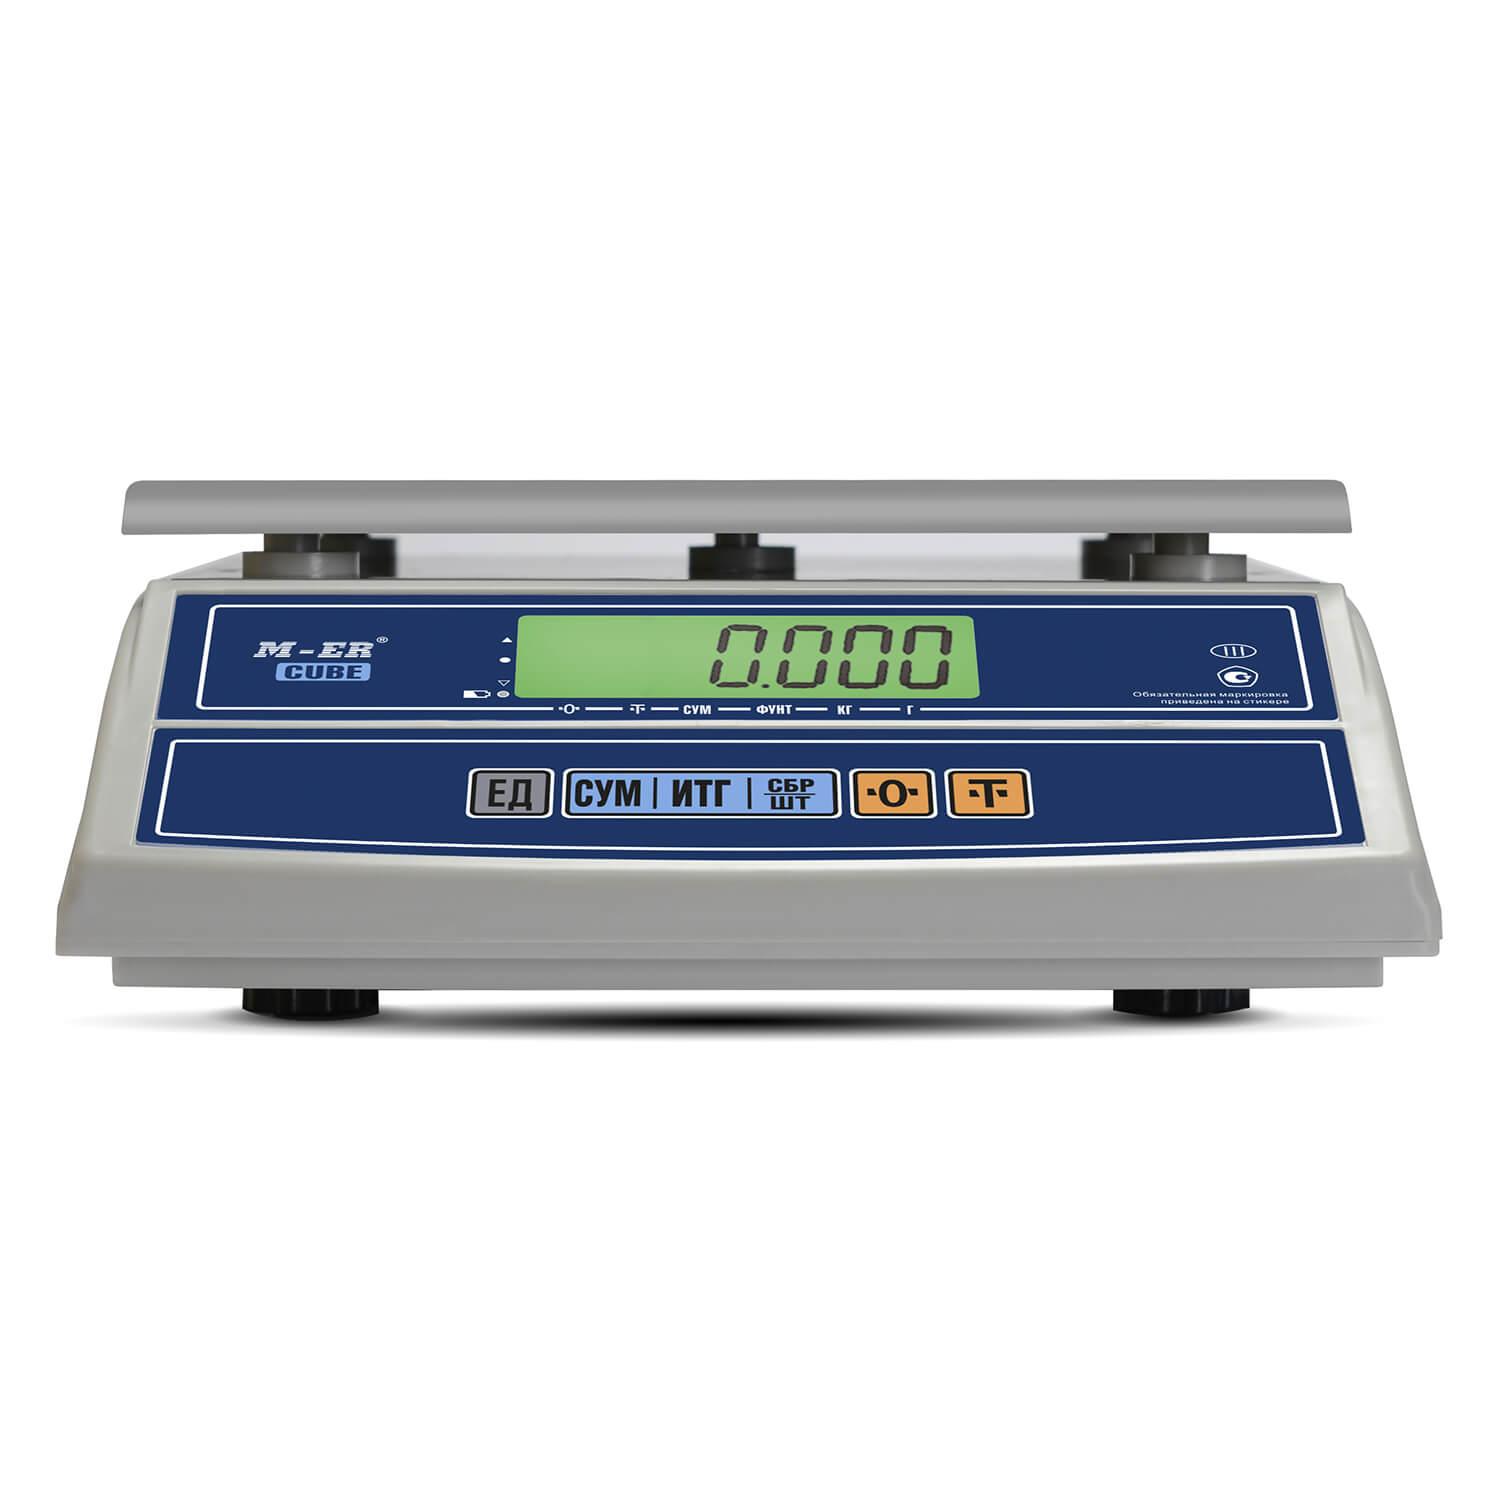 Фасовочные настольные весы M-ER 326 AFL-6.1 "Cube" c USB-COM LCD (3145)